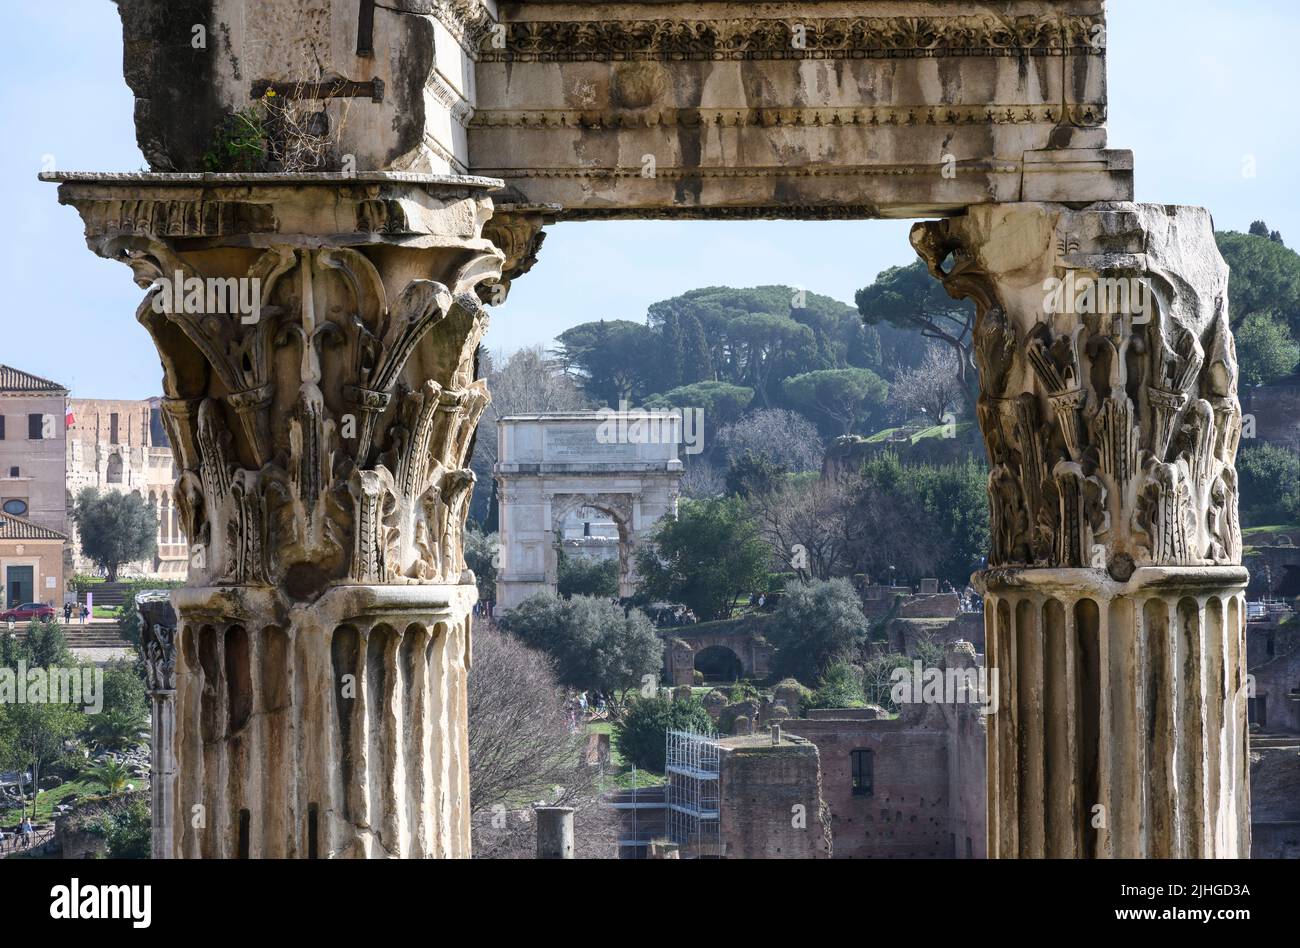 Blick auf den Titusbogen durch die korinthischen Säulen des Vespasianertempels und Titus im Forum Romanum, Zentralroman, Latium, Italien. Stockfoto